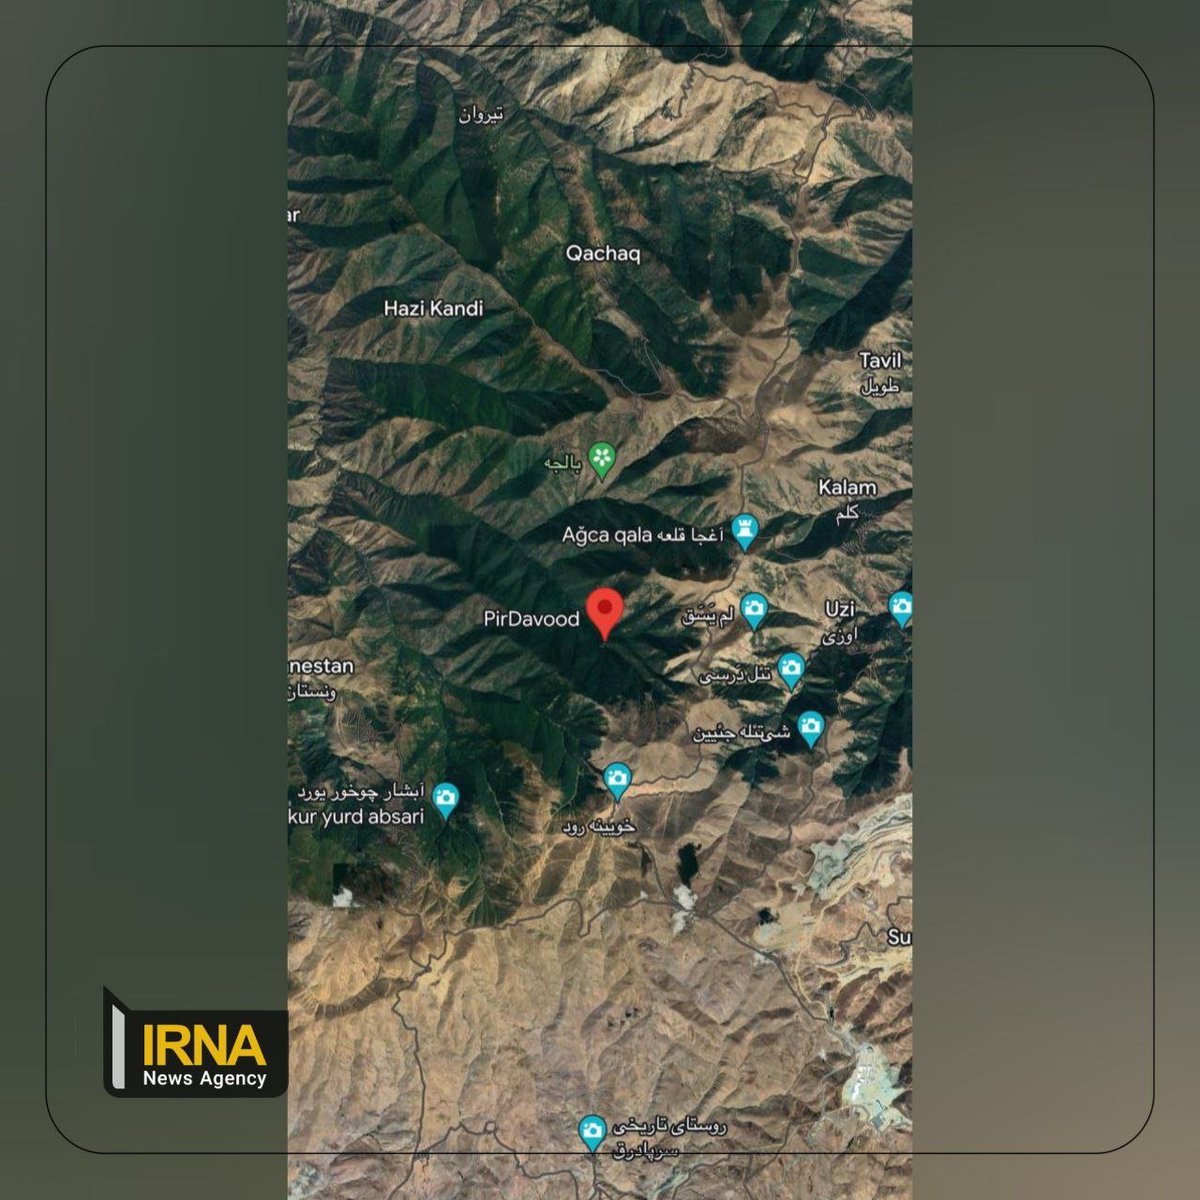 La agencia de noticias iraní IRNA publicó los datos de la zona donde se cree está el helicóptero estrellado. Es un sitio montañoso que, junto al clima, dificulta el acceso y por ende resolver que sucedió con la comitiva presidencial Hay 20 equipos de búsqueda desplegados